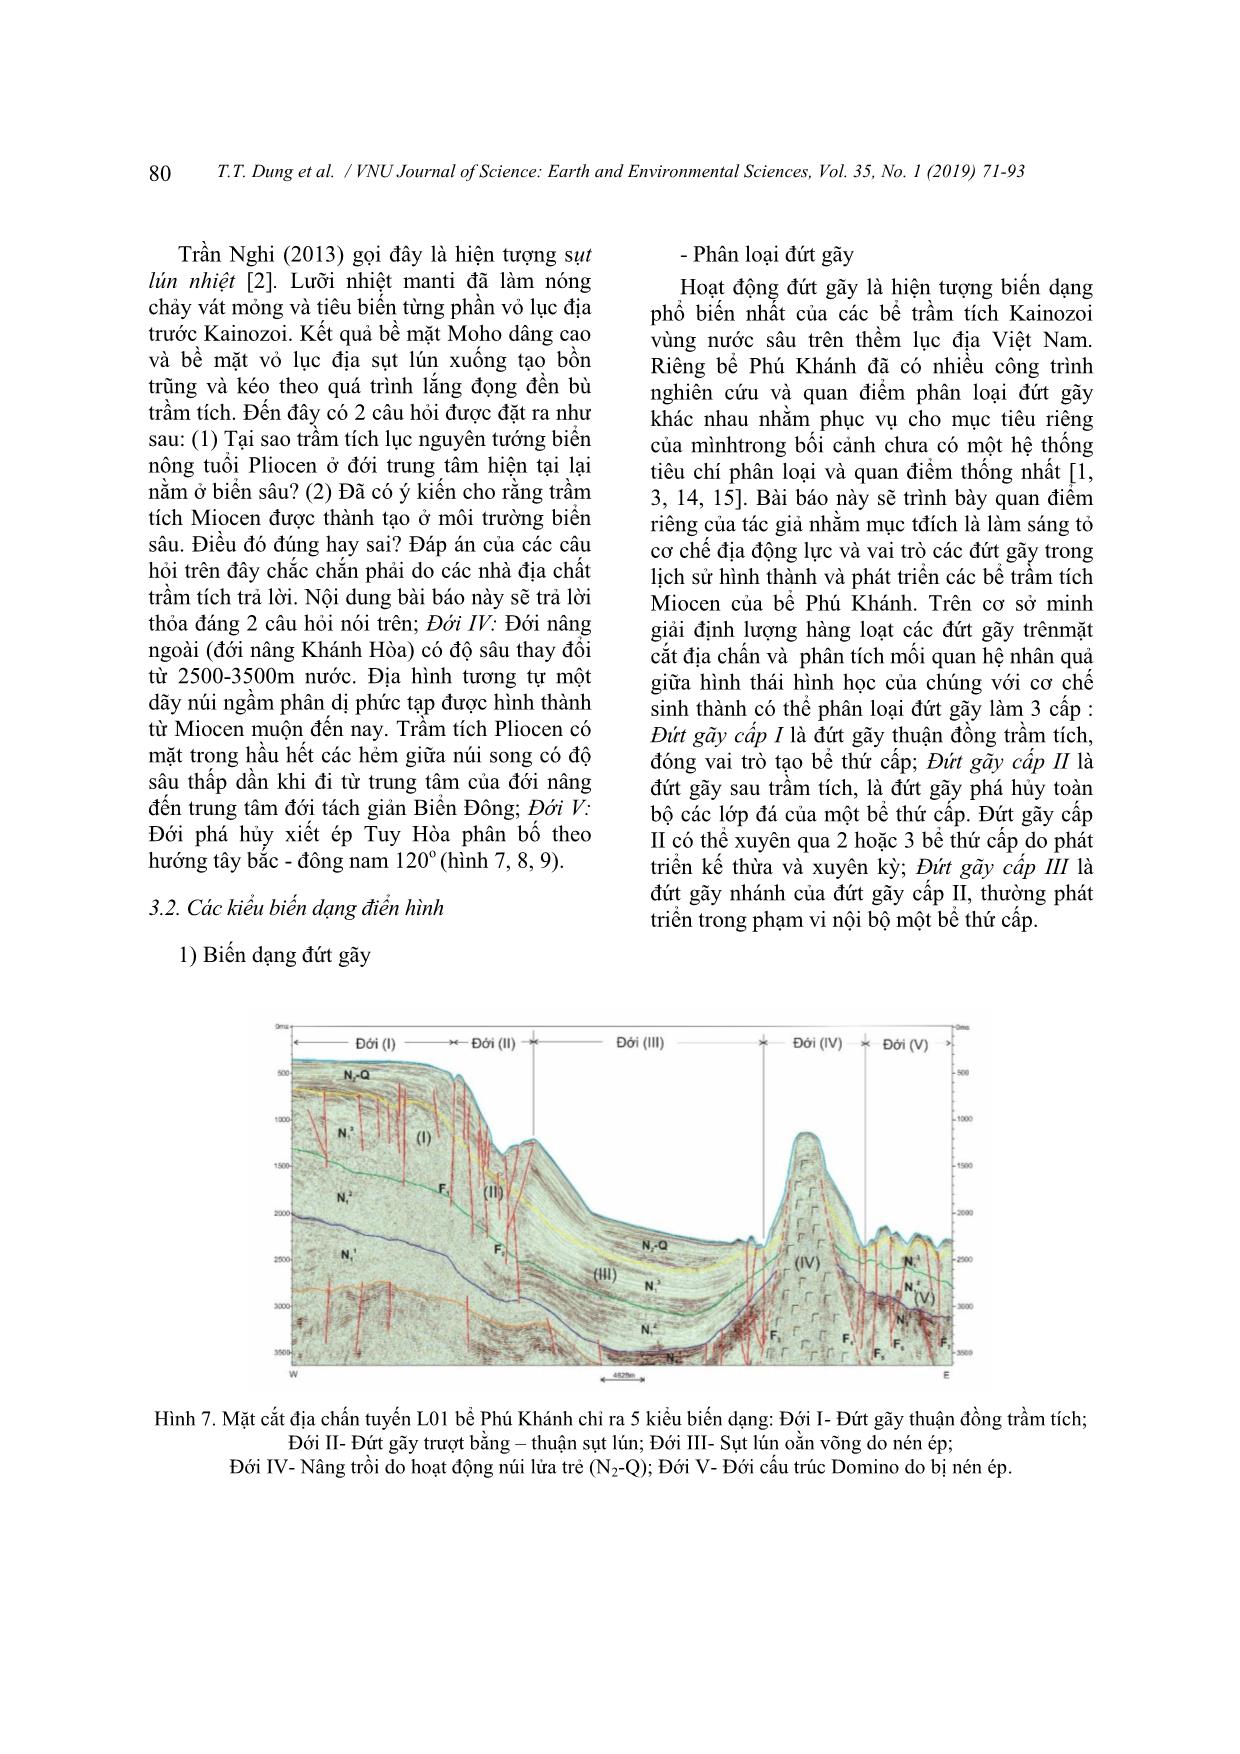 Tiến hóa cấu trúc địa chất và môi trường trầm tích Miocen khu vực bể phú khánh trang 10